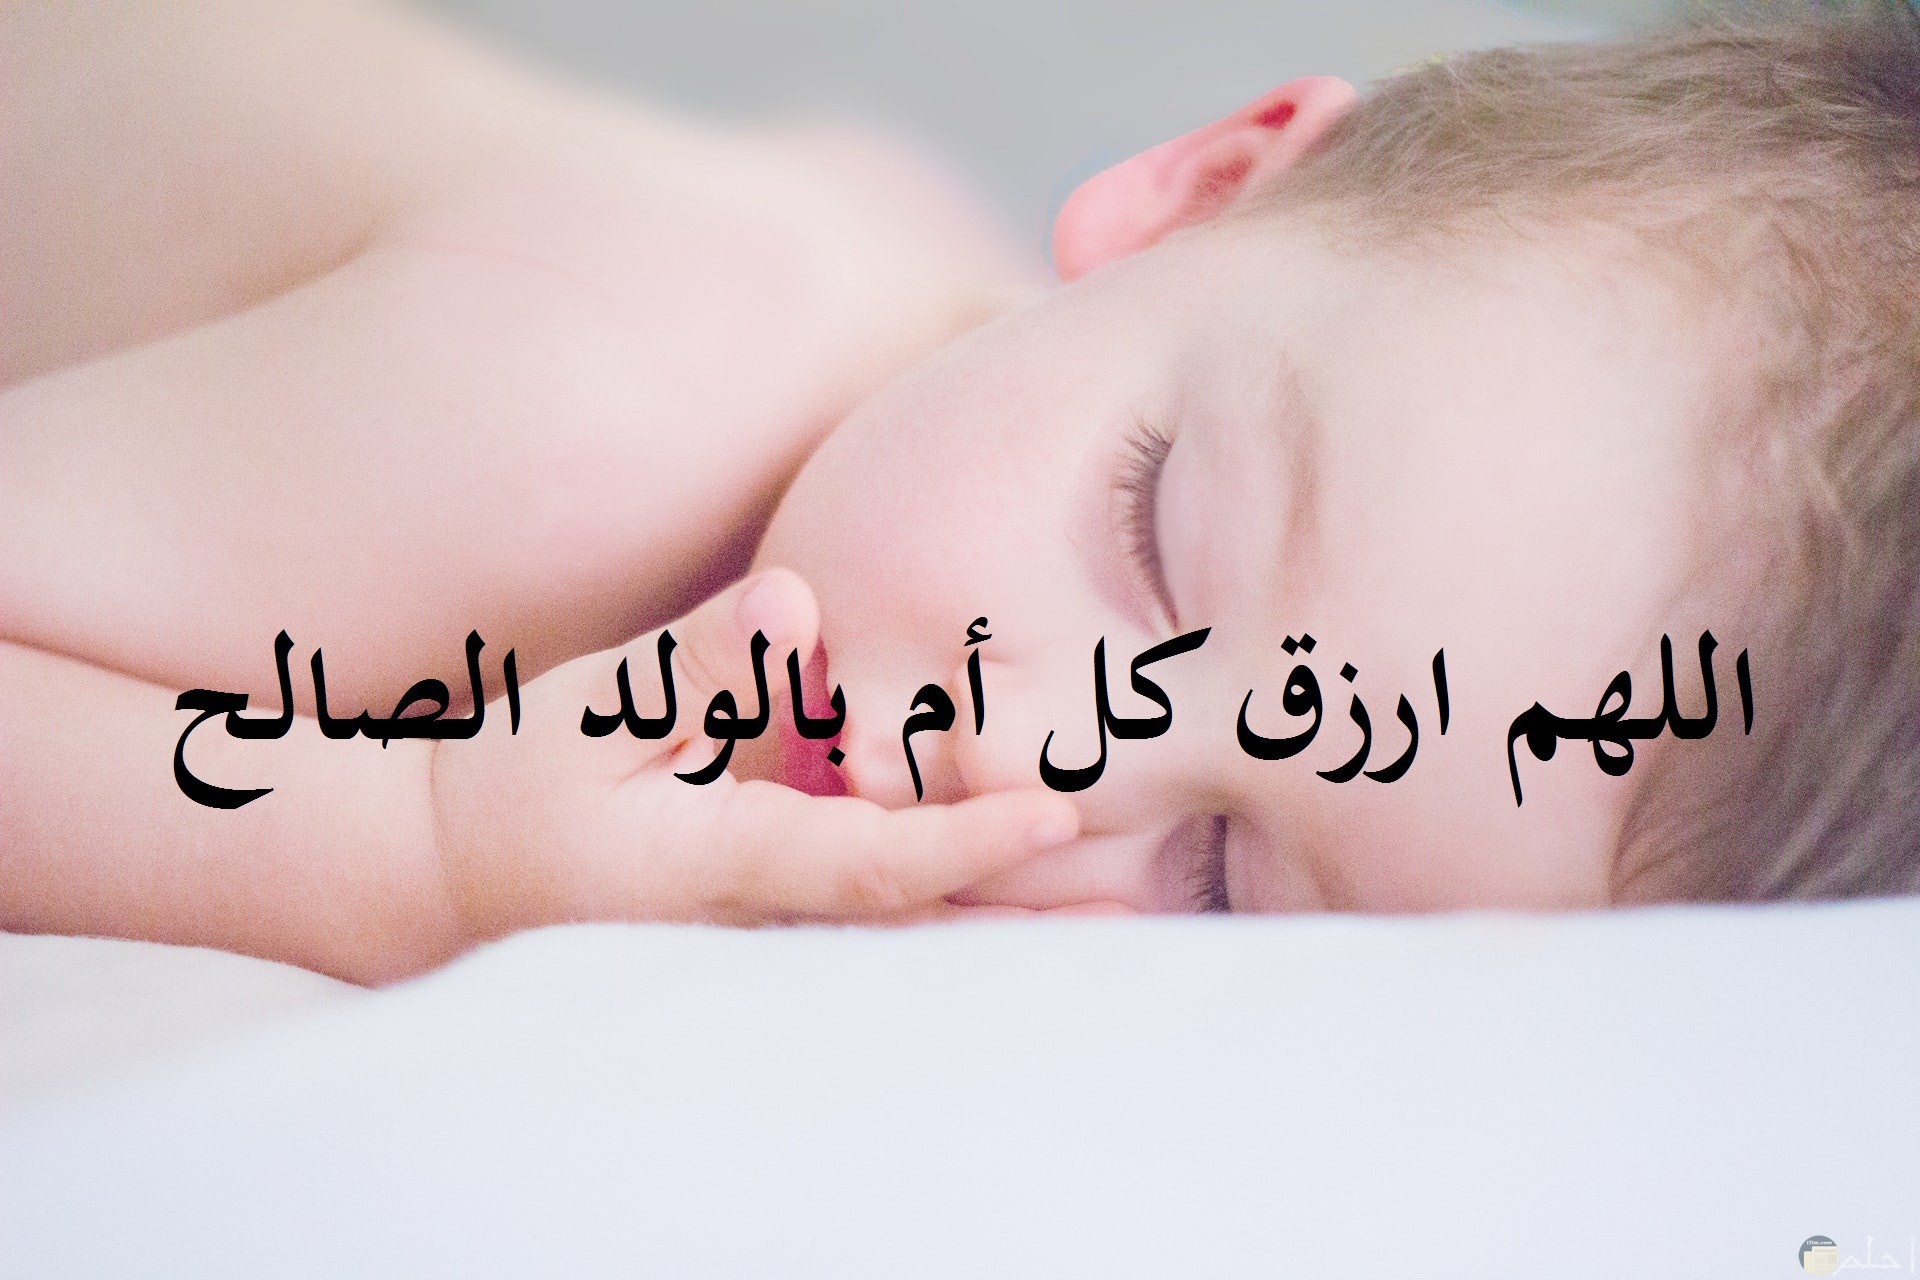 صورة جميلة مكتوب عليها دعاء بأن يرزق الله كل أم بولد صالح مع خلفية طفل صغير نائم